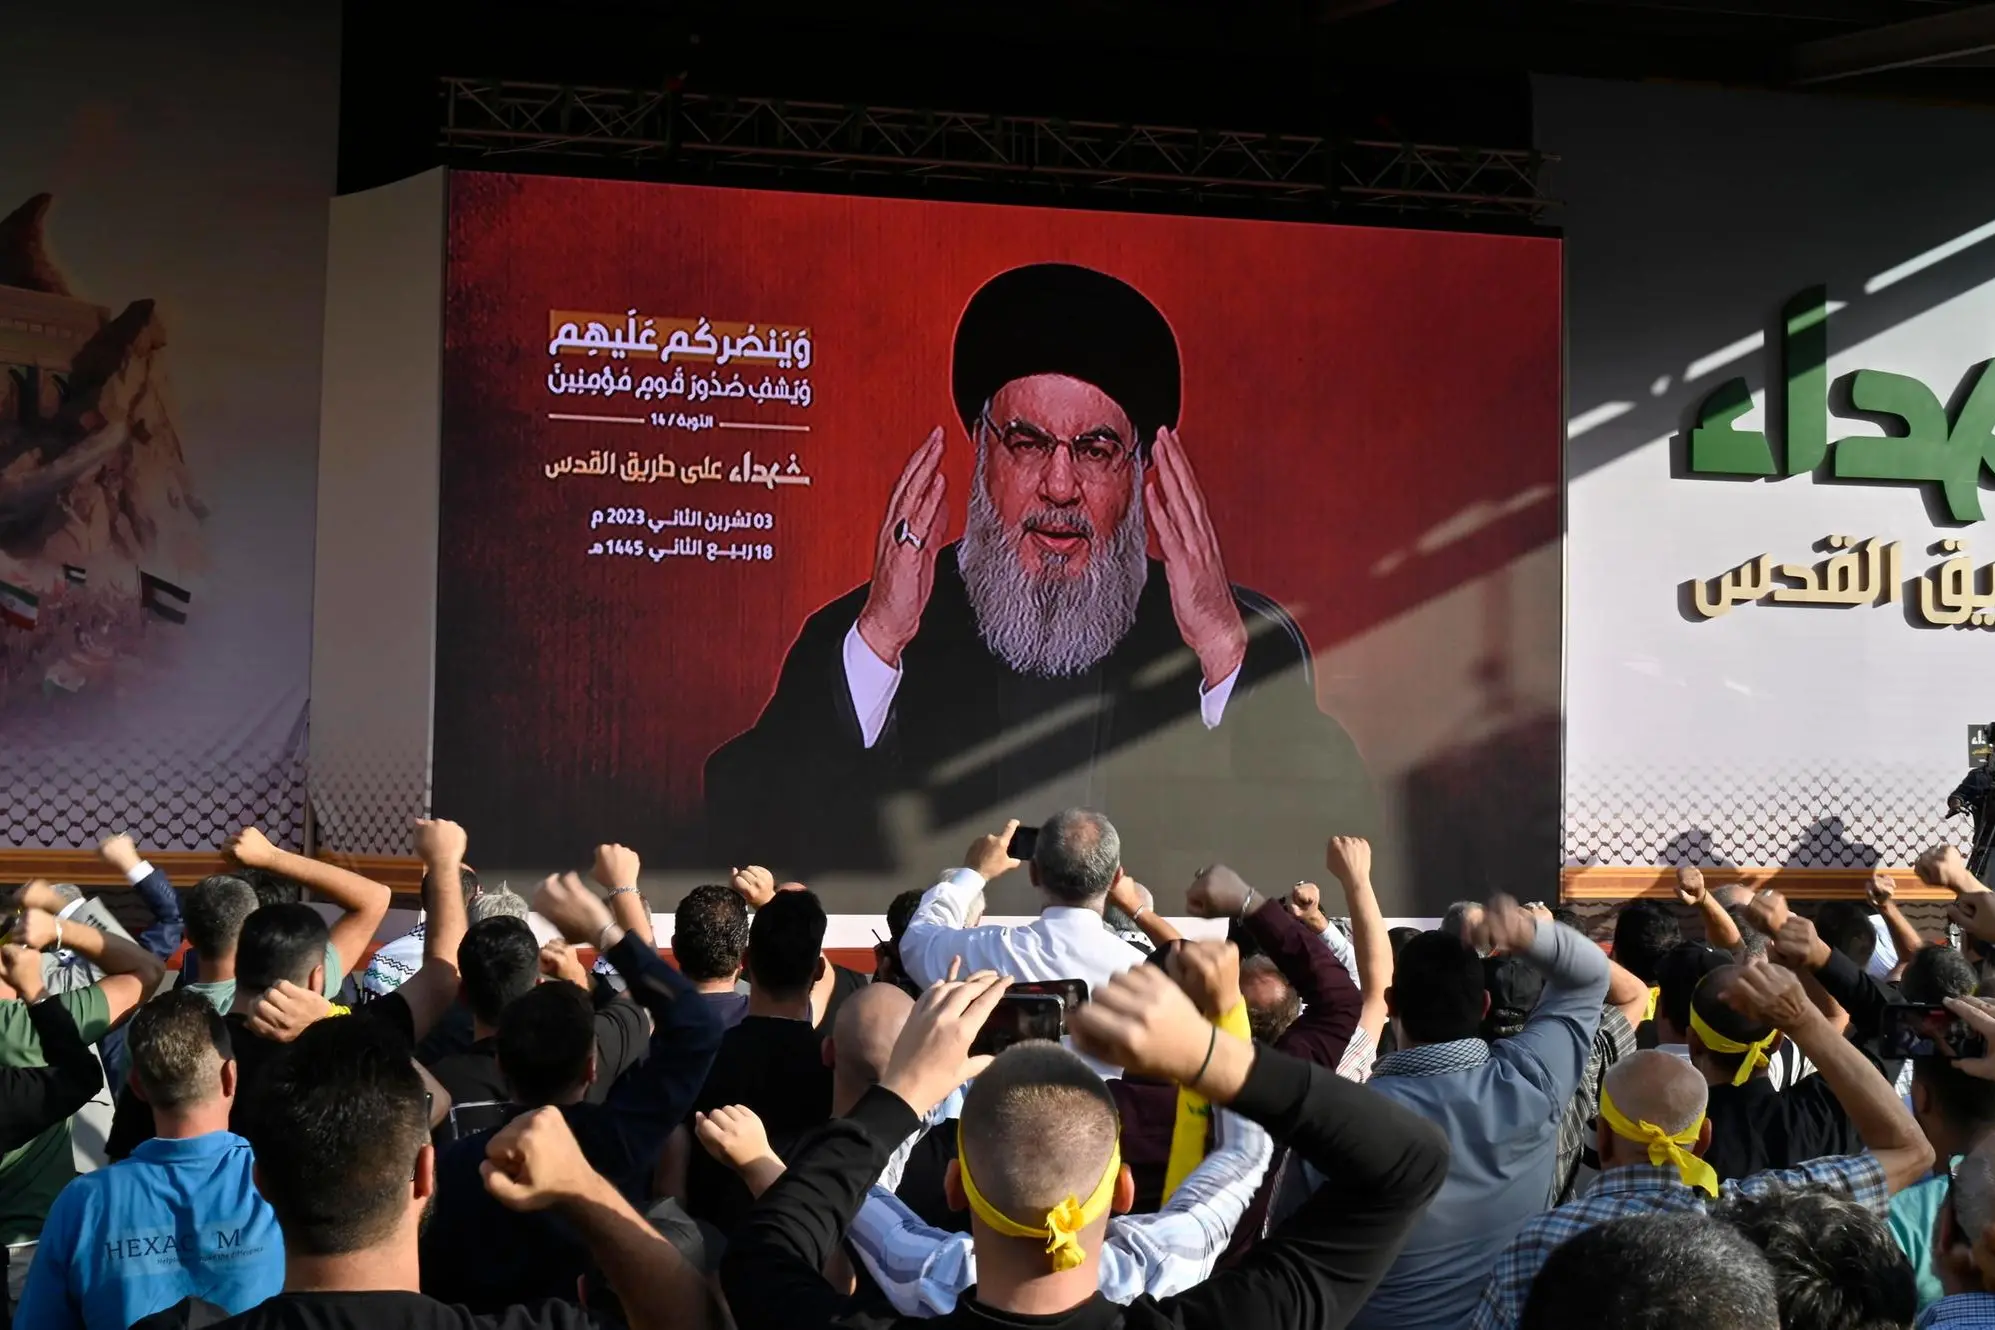 Il discorso di Nasrallah in diretta tv (Ansa)